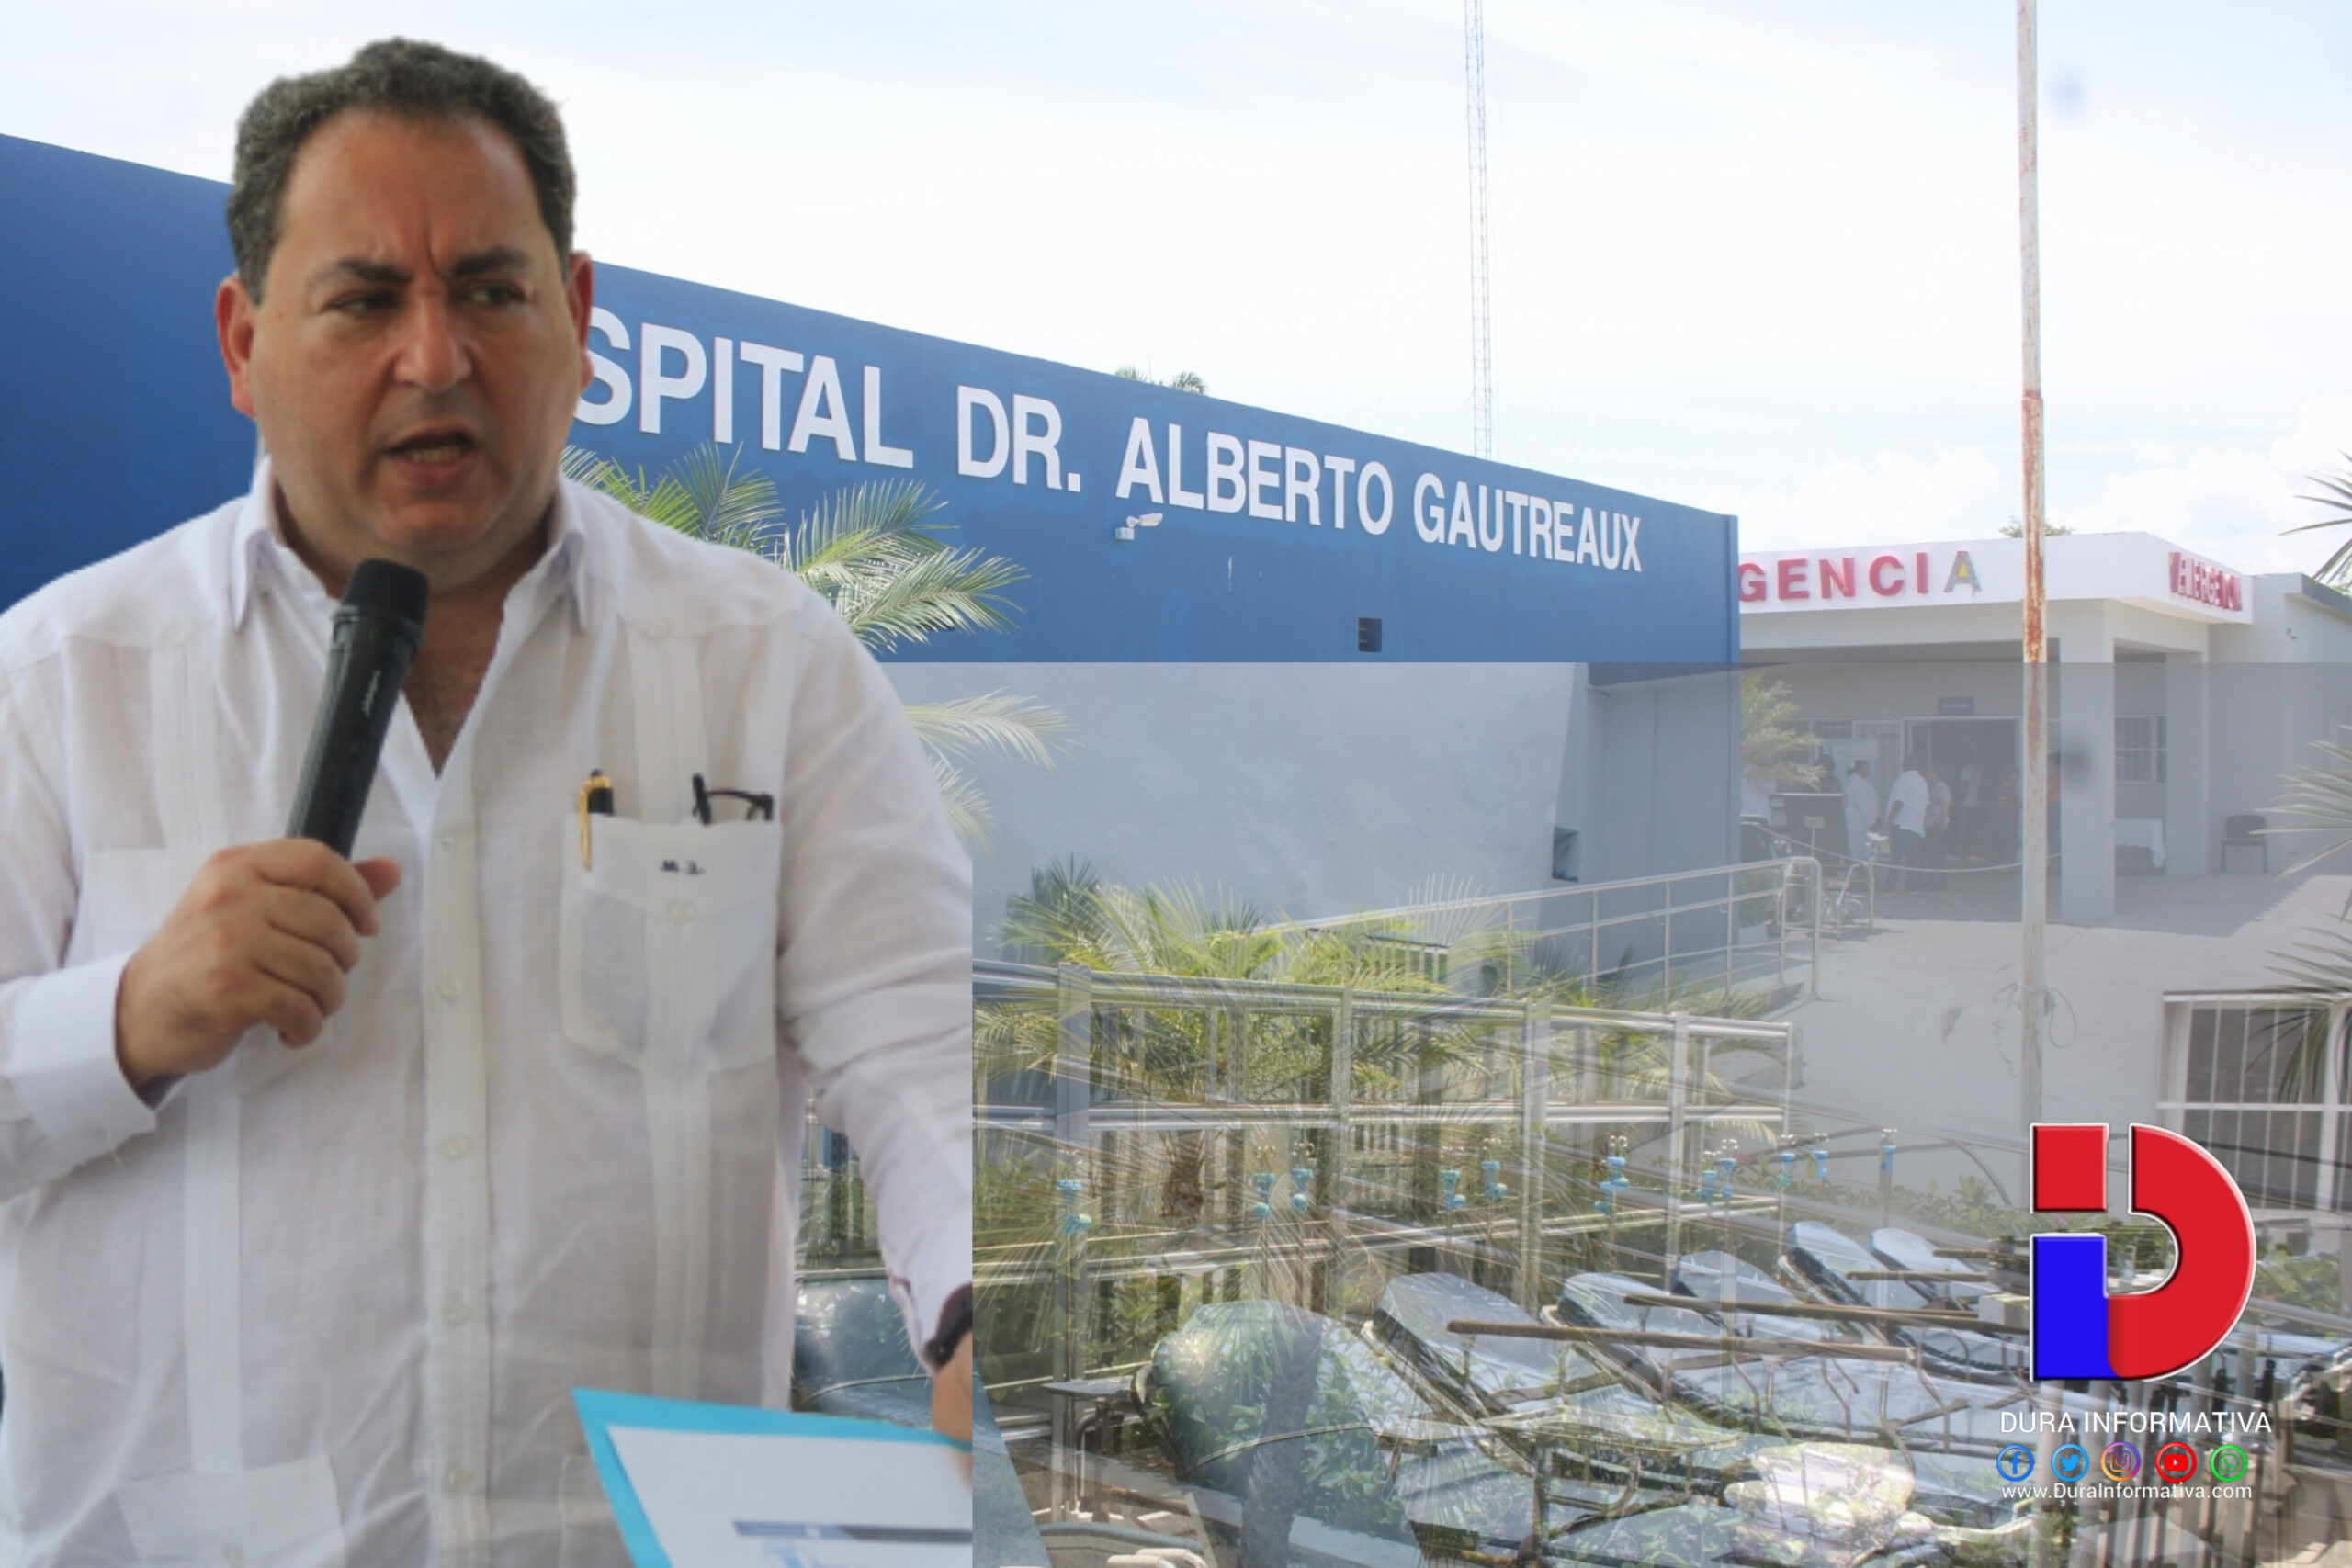 2560px x 1707px - Gobierno Dominicano a travÃ©s del Servicio Nacional de Salud entrega al  hospital SÃ¡nchez mÃ¡s de 3 millones de pesos en equipos mÃ©dicos.